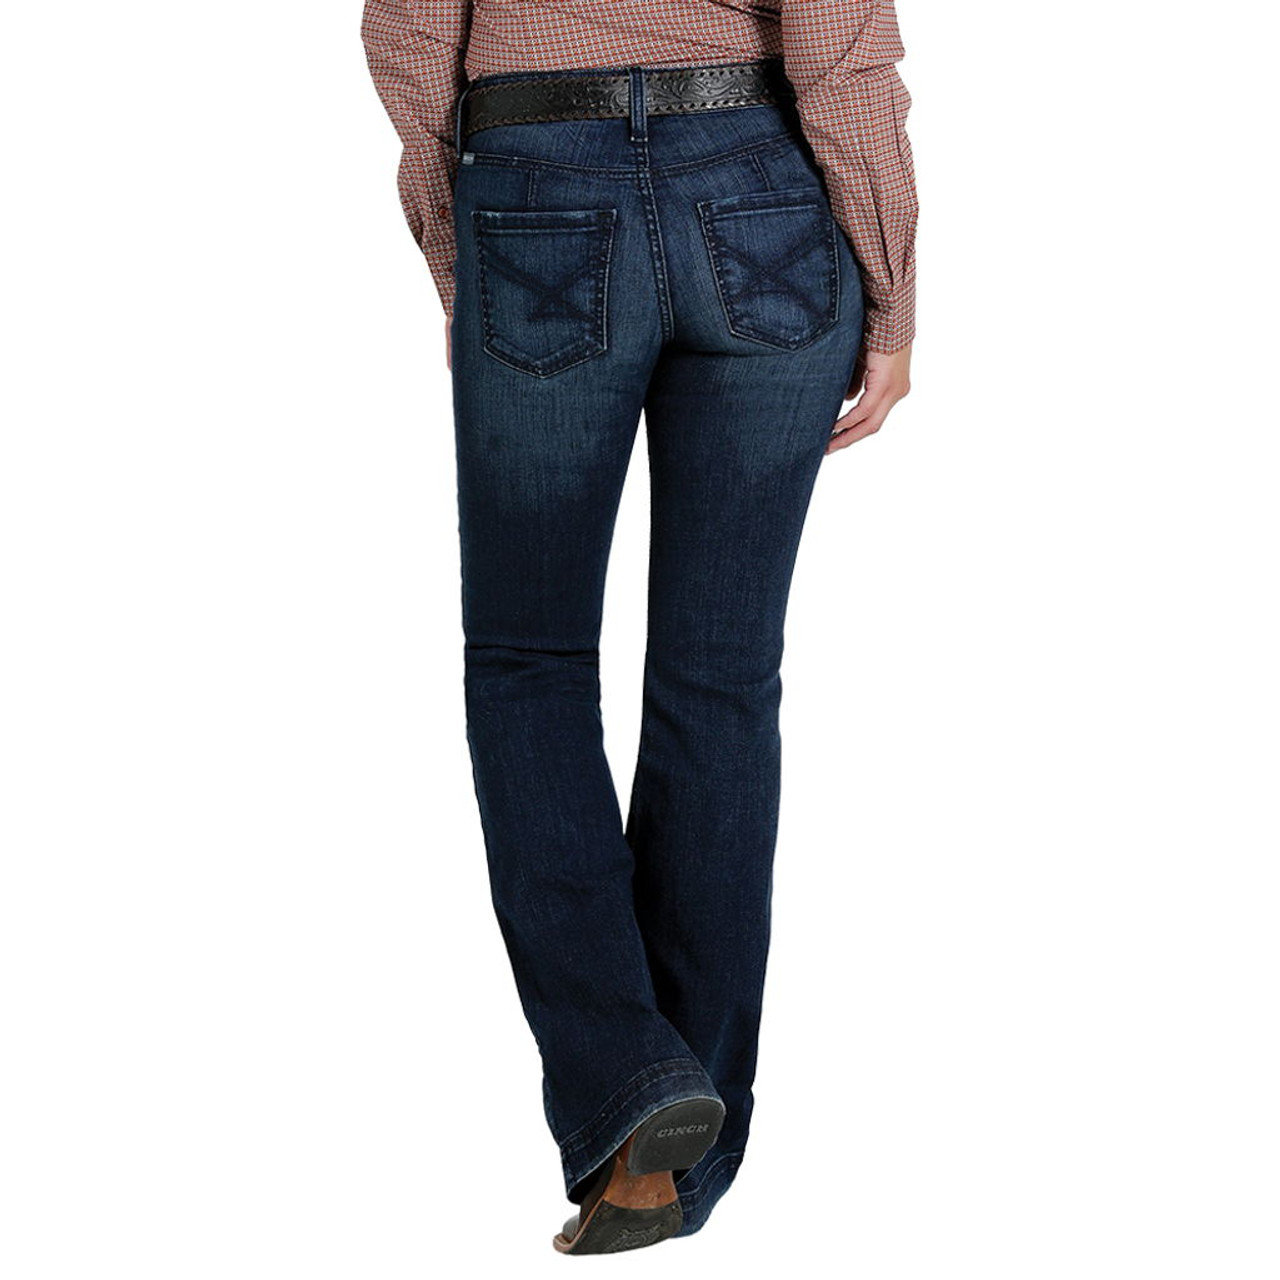 Wrangler Women's Slim Fit Cowboy Cut Jean